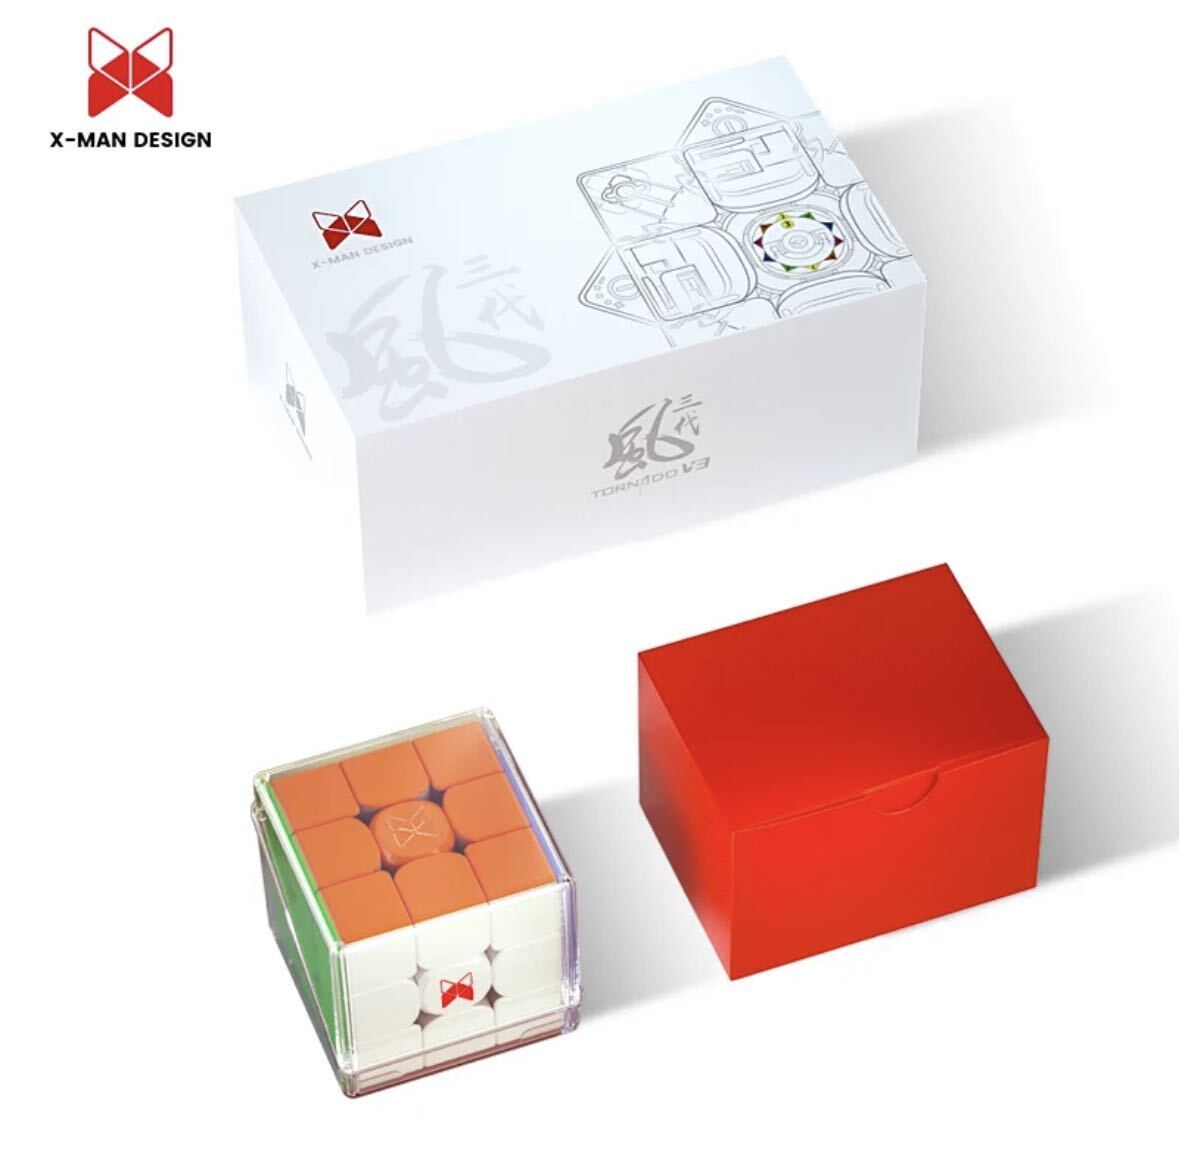 新品　XMD トルネードV3パイオニア ルービックキューブ スピードキューブ 知育玩具 競技用 3×3 立体パズル　上級者向け